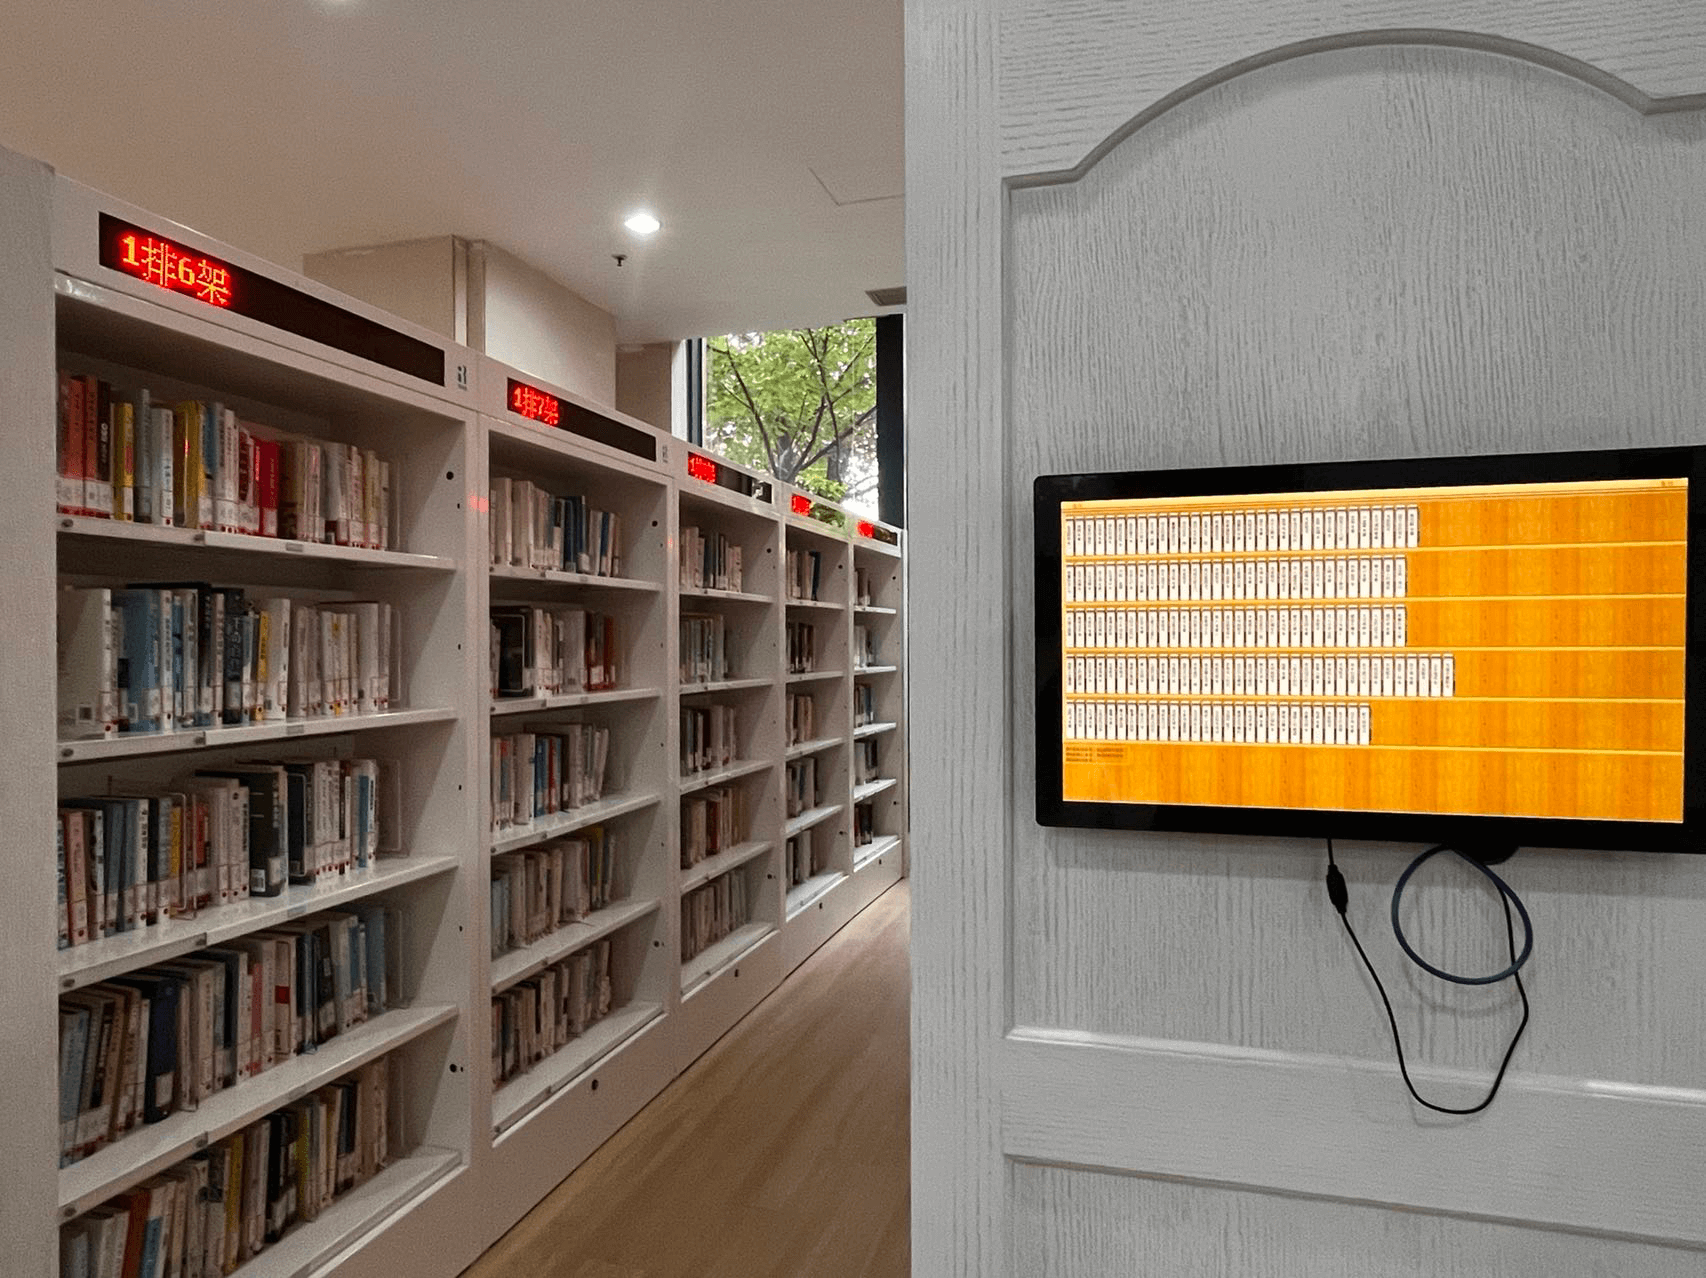 Biblioteca inteligente: tela sensível ao toque